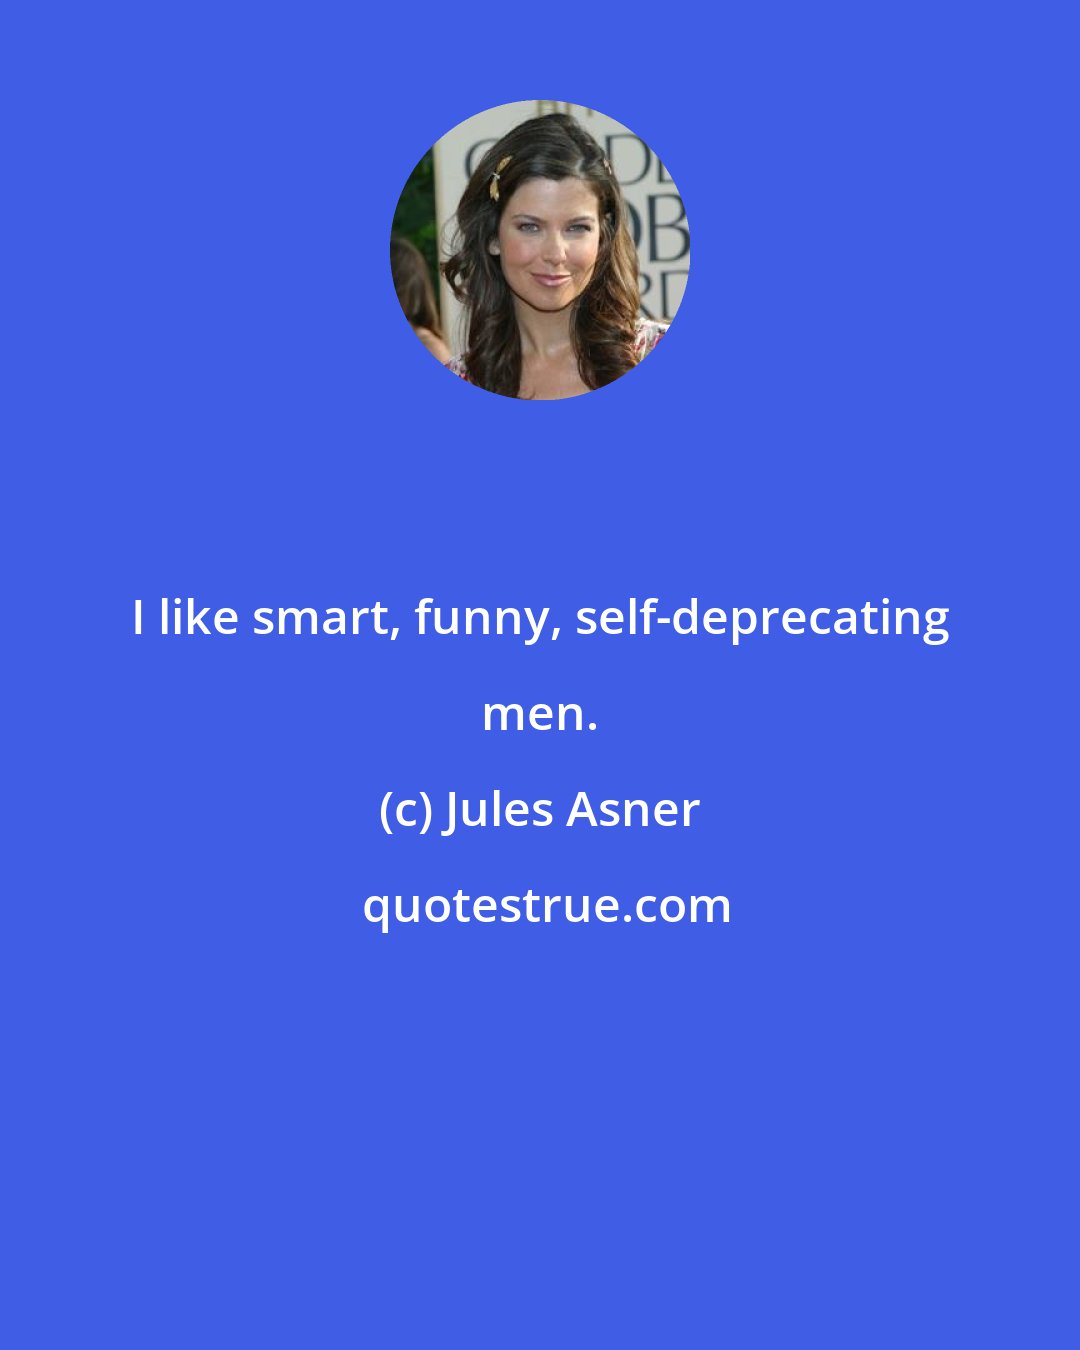 Jules Asner: I like smart, funny, self-deprecating men.